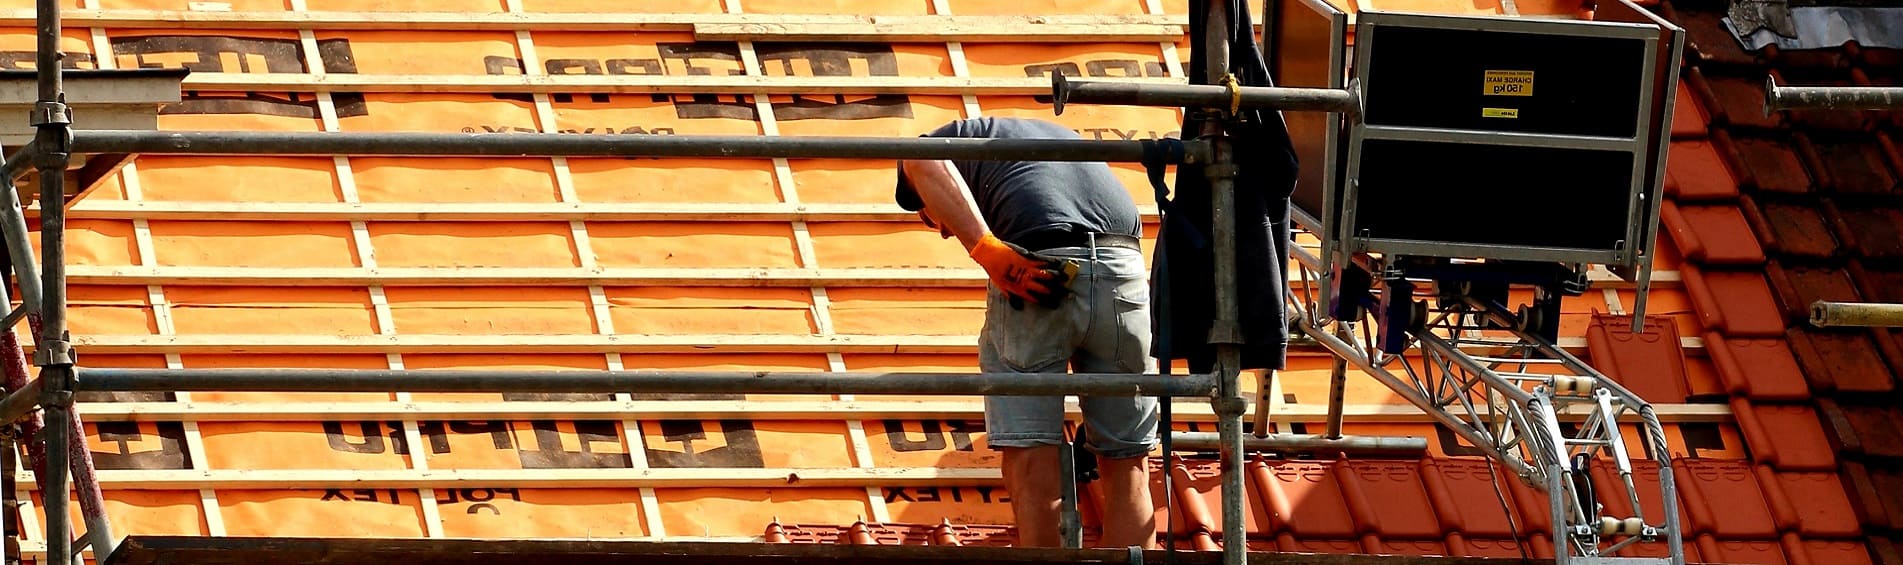 neue Dacheindeckung von Steildach professionelle Dachdecker Hamburg-Langenhorn